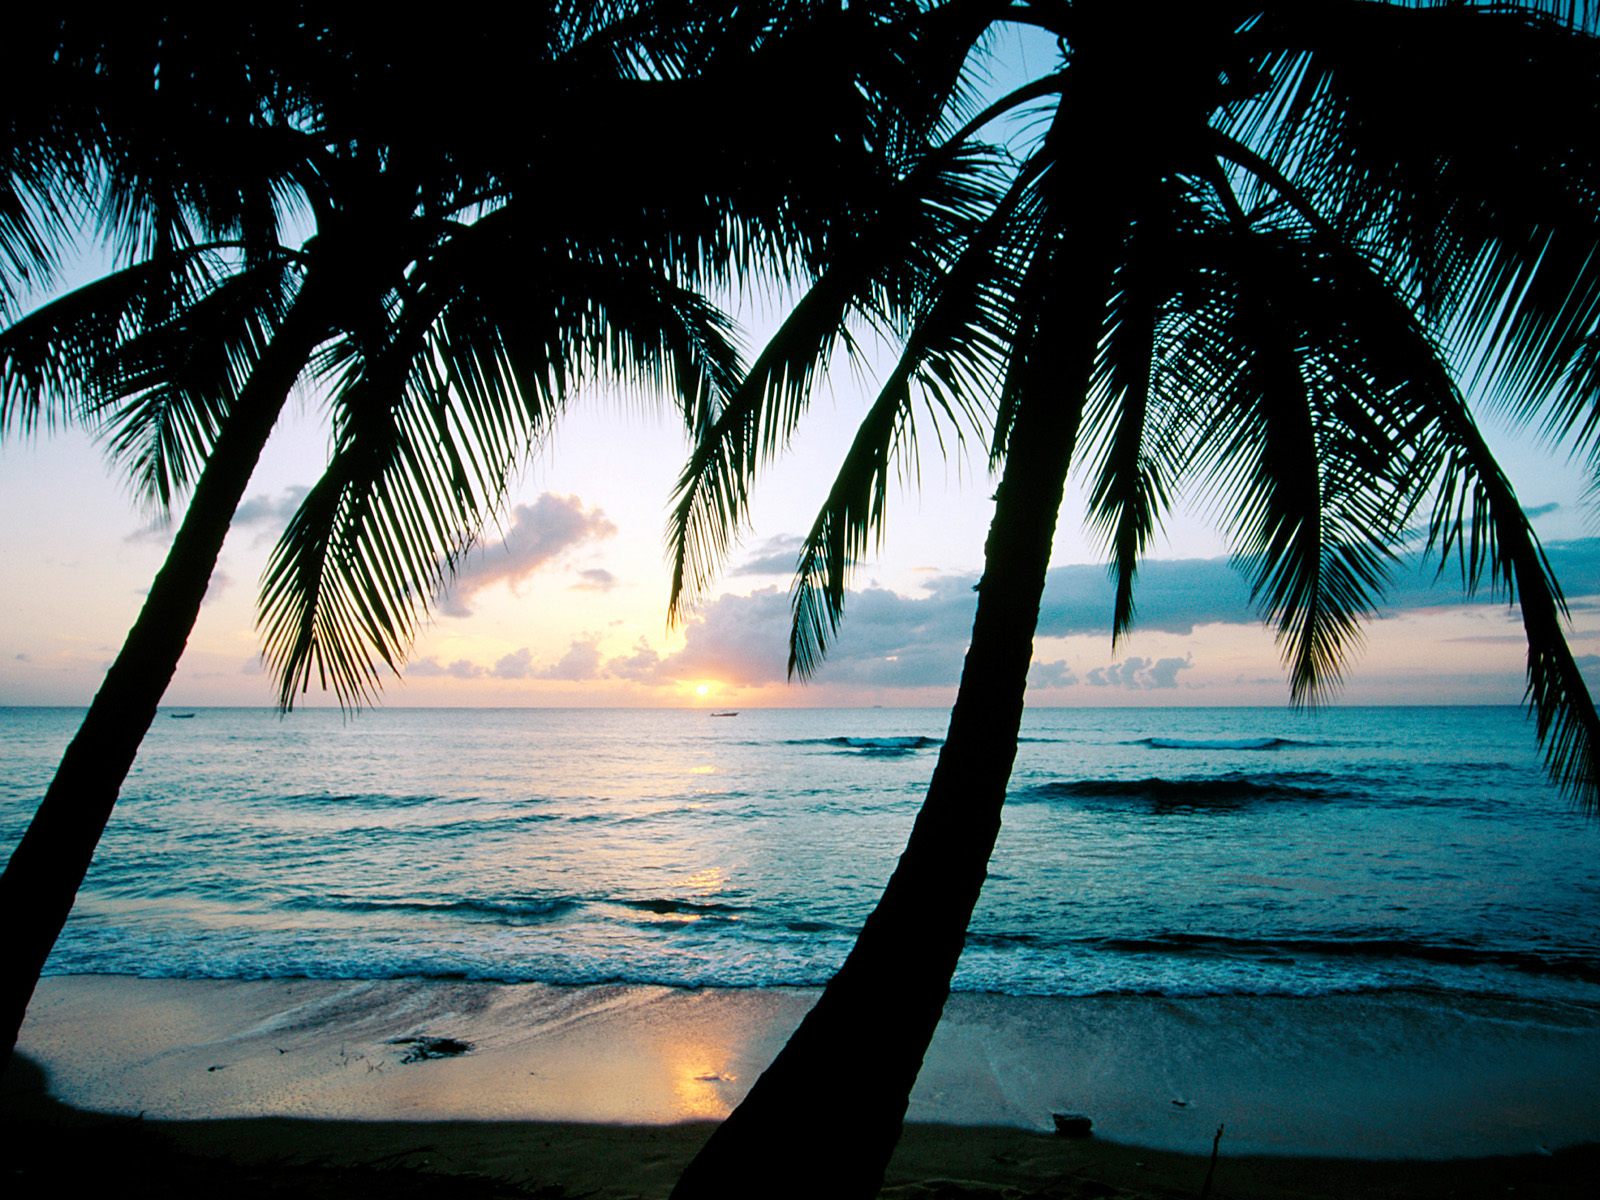 King's_Beach_Barbados_West_Indies.jpg